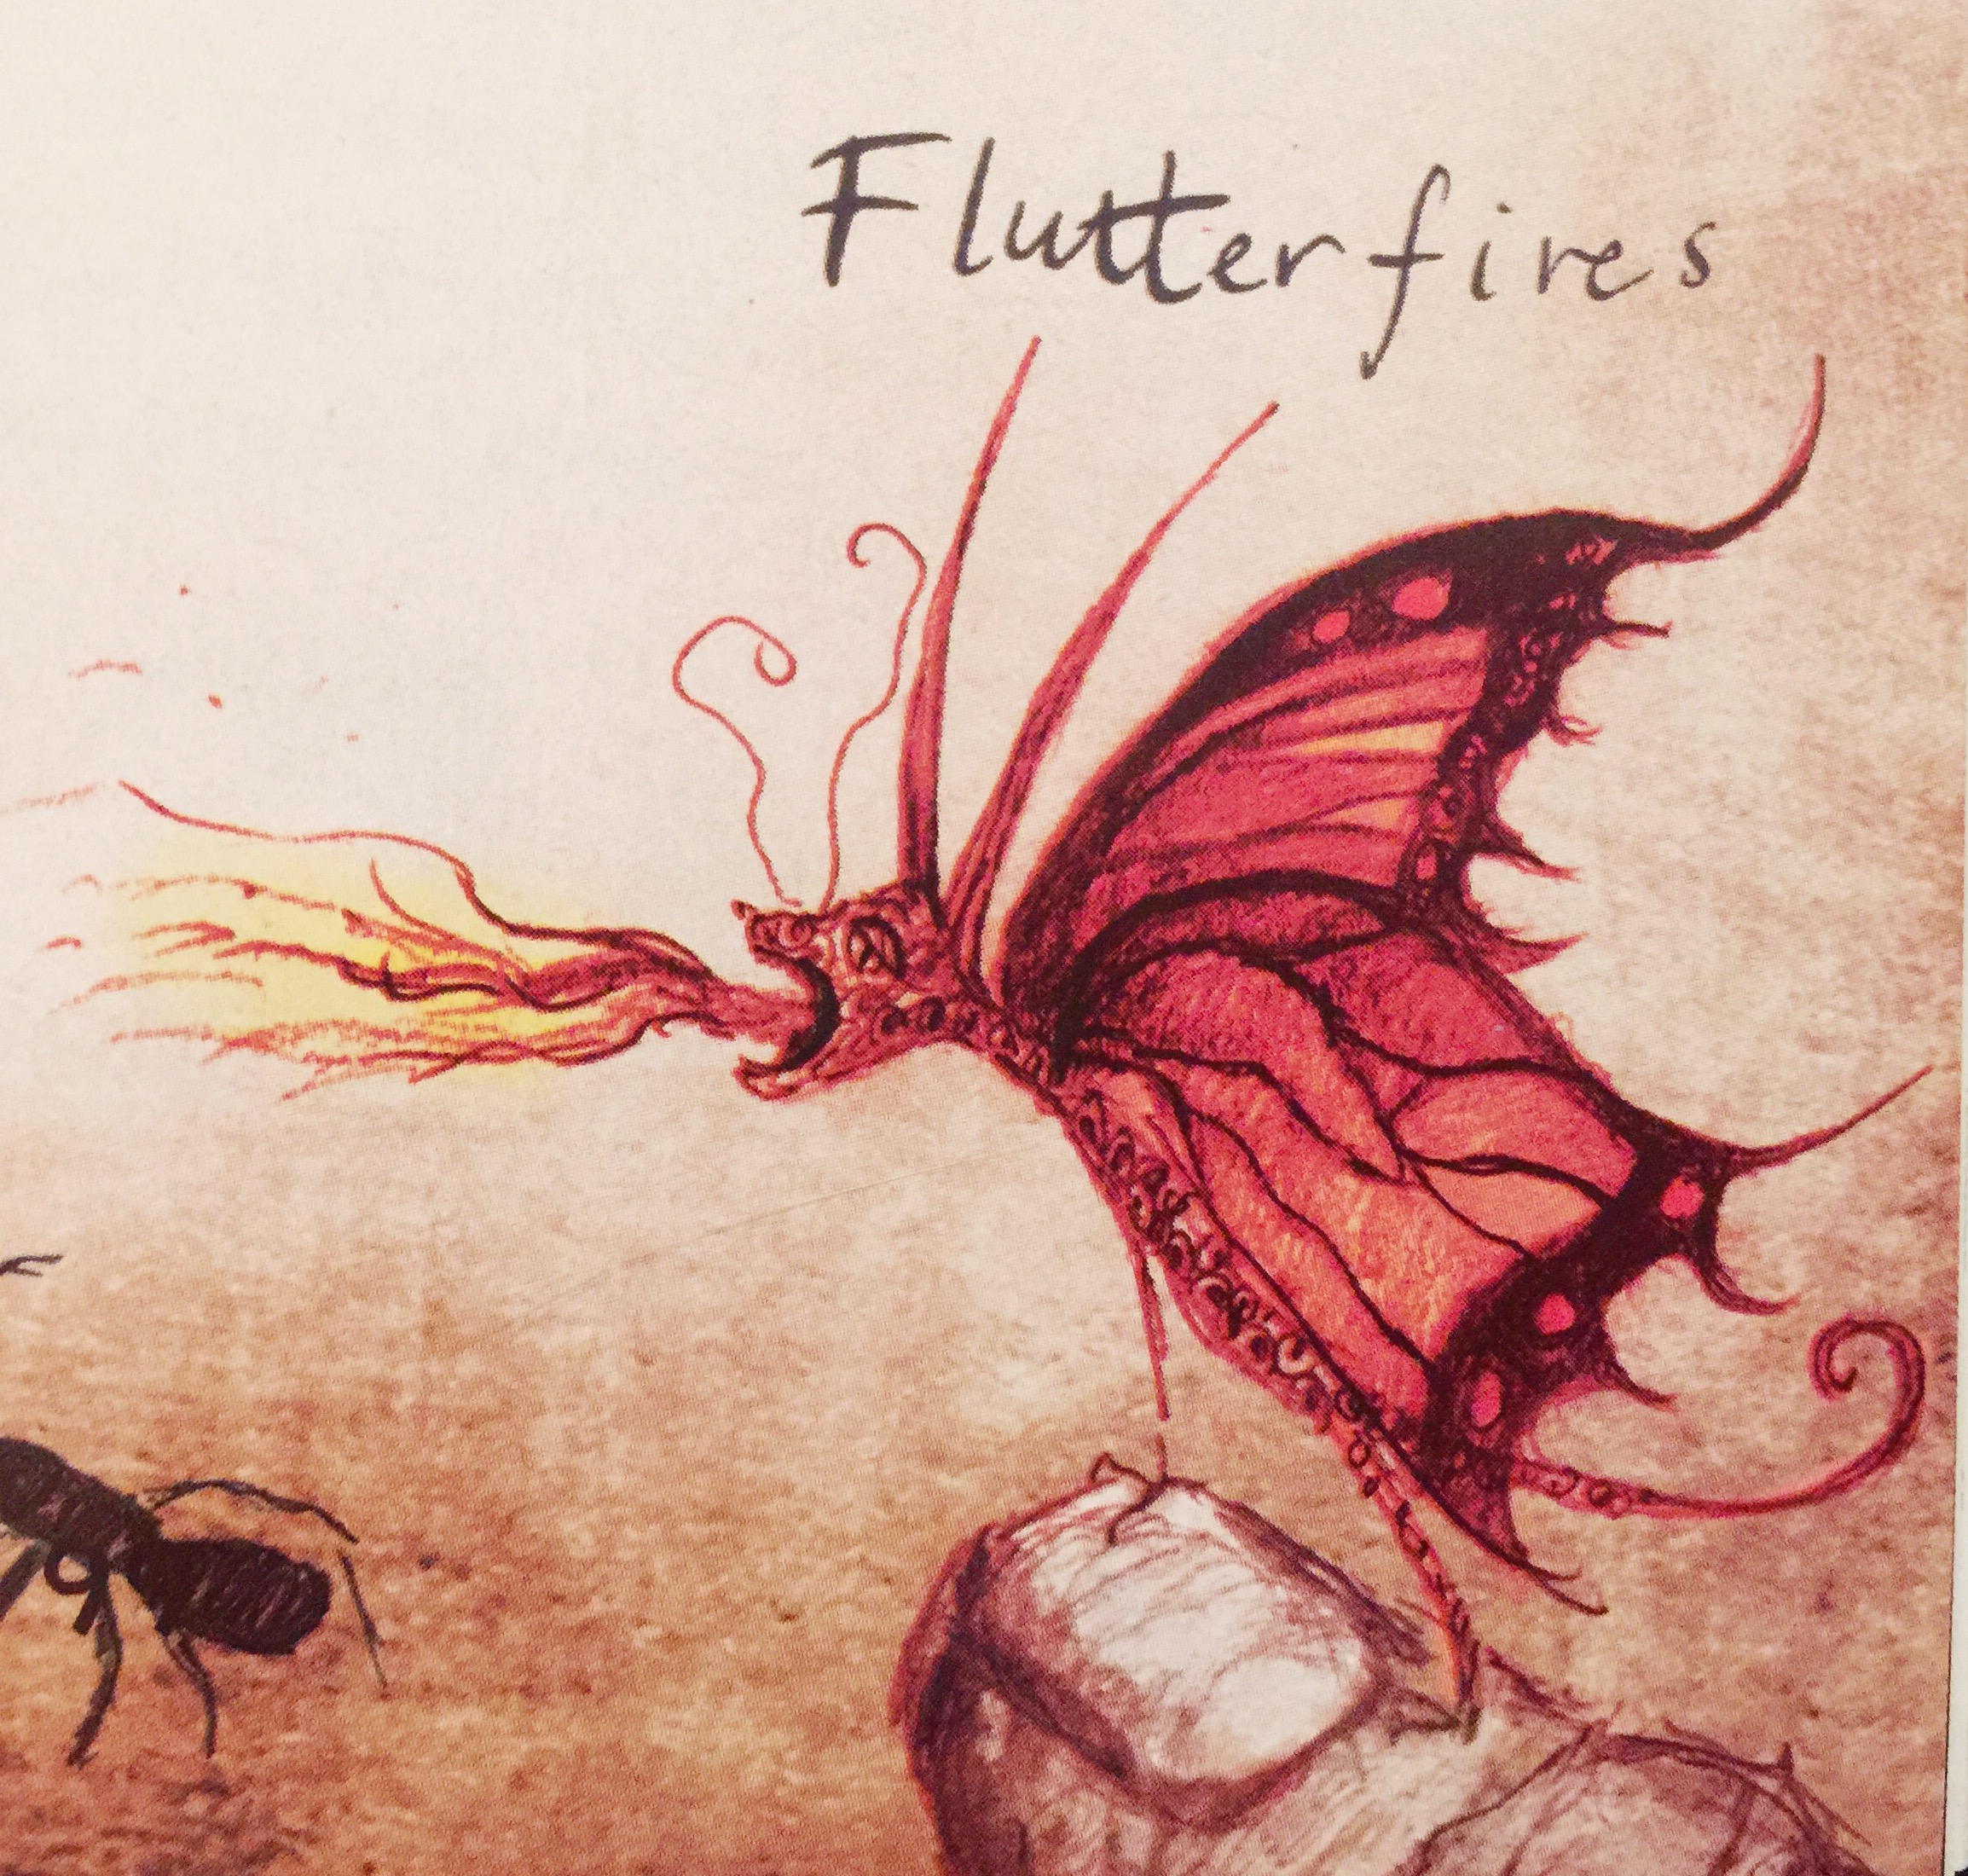 Long-Eared Flutterfire | How to Train Your Dragon Wiki | Fandom